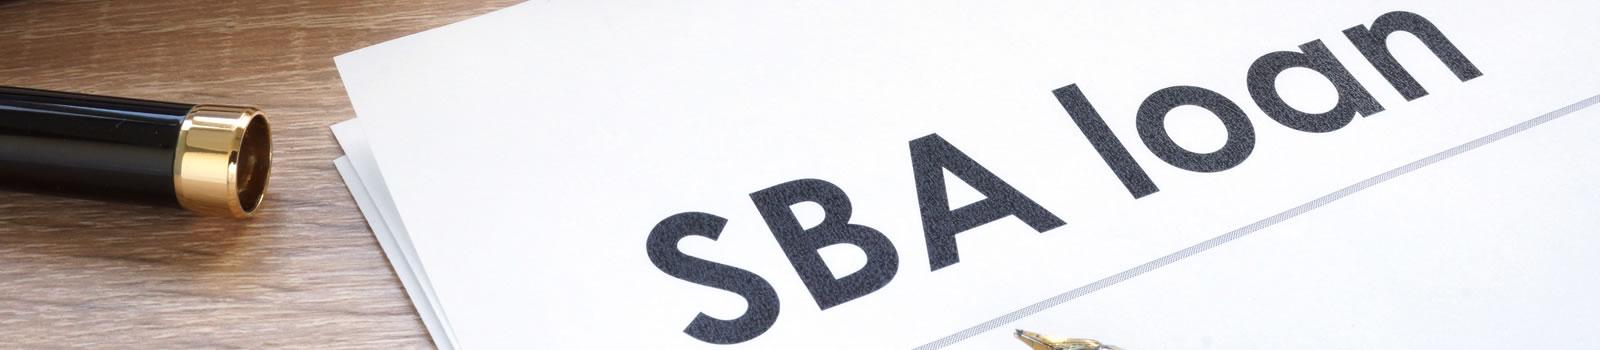 SBA Loan Programs